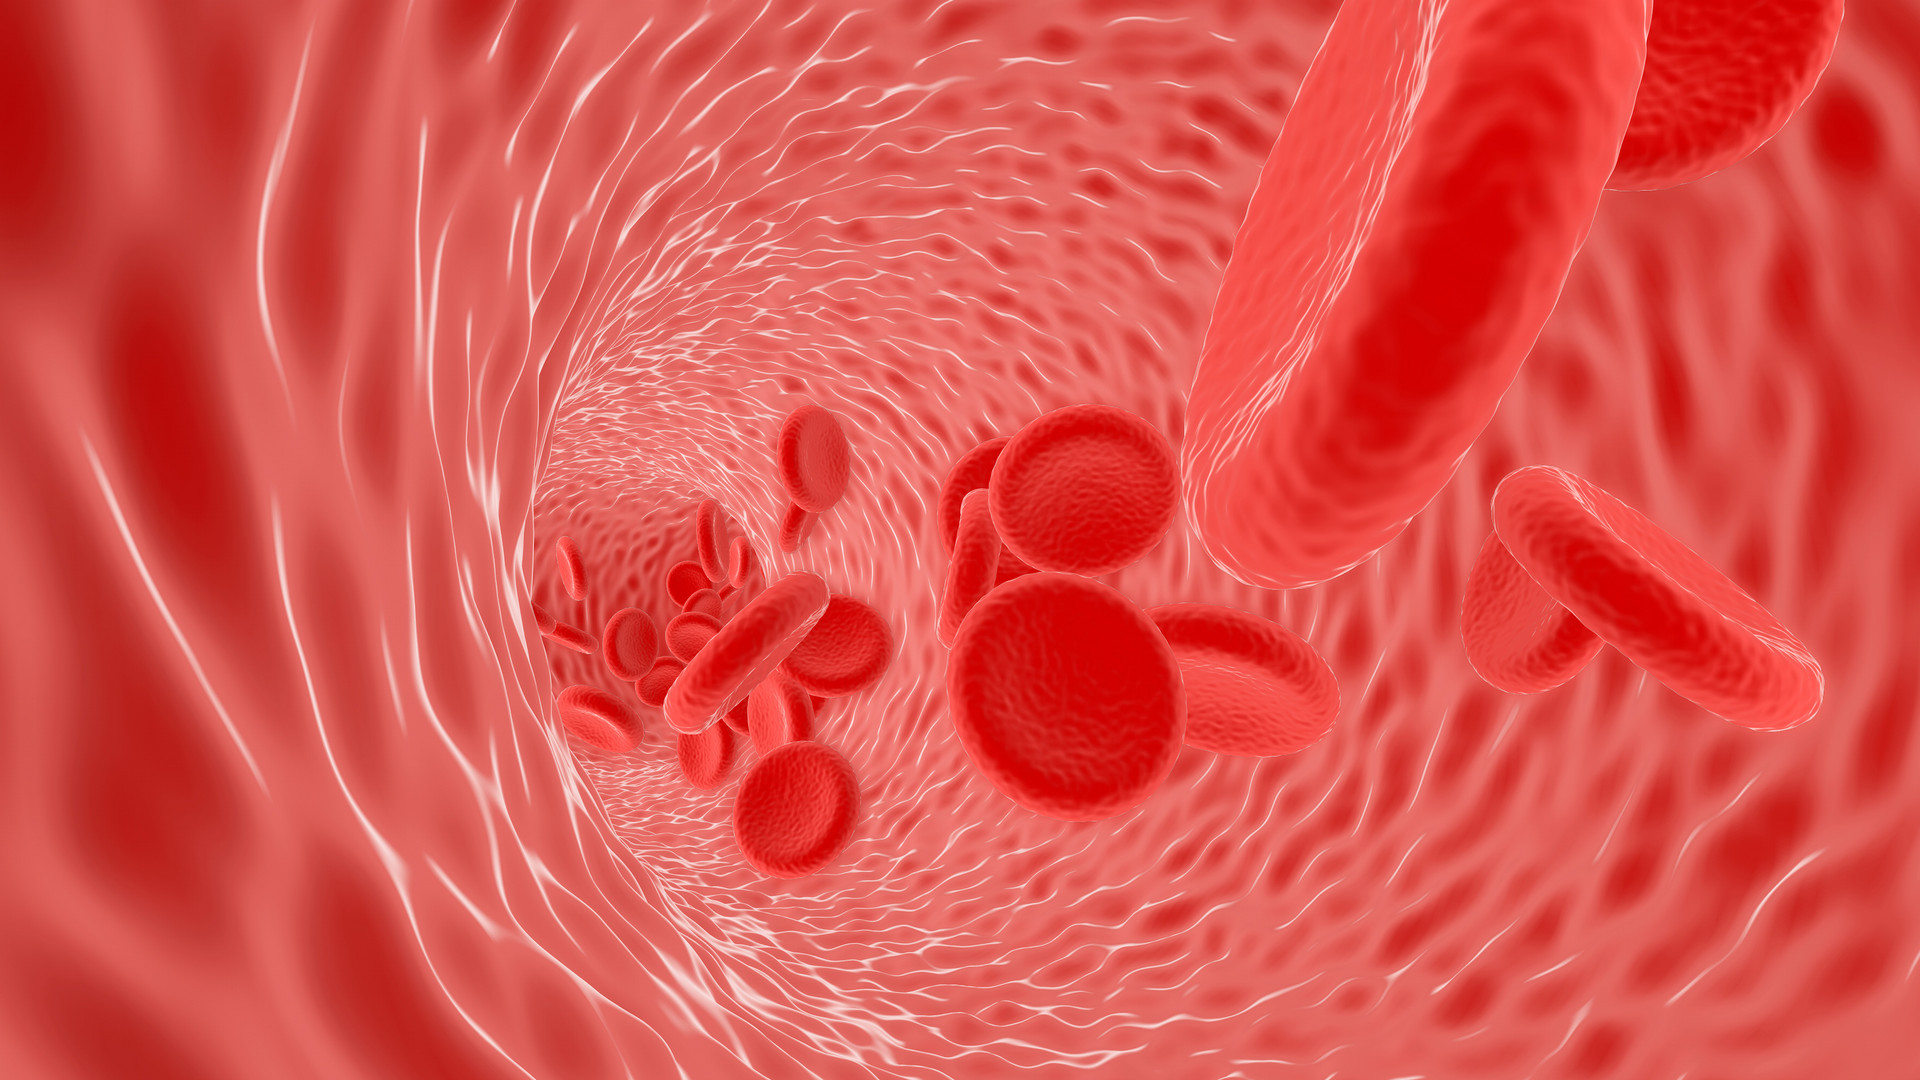 图40 正常红细胞-血液学细胞学-医学